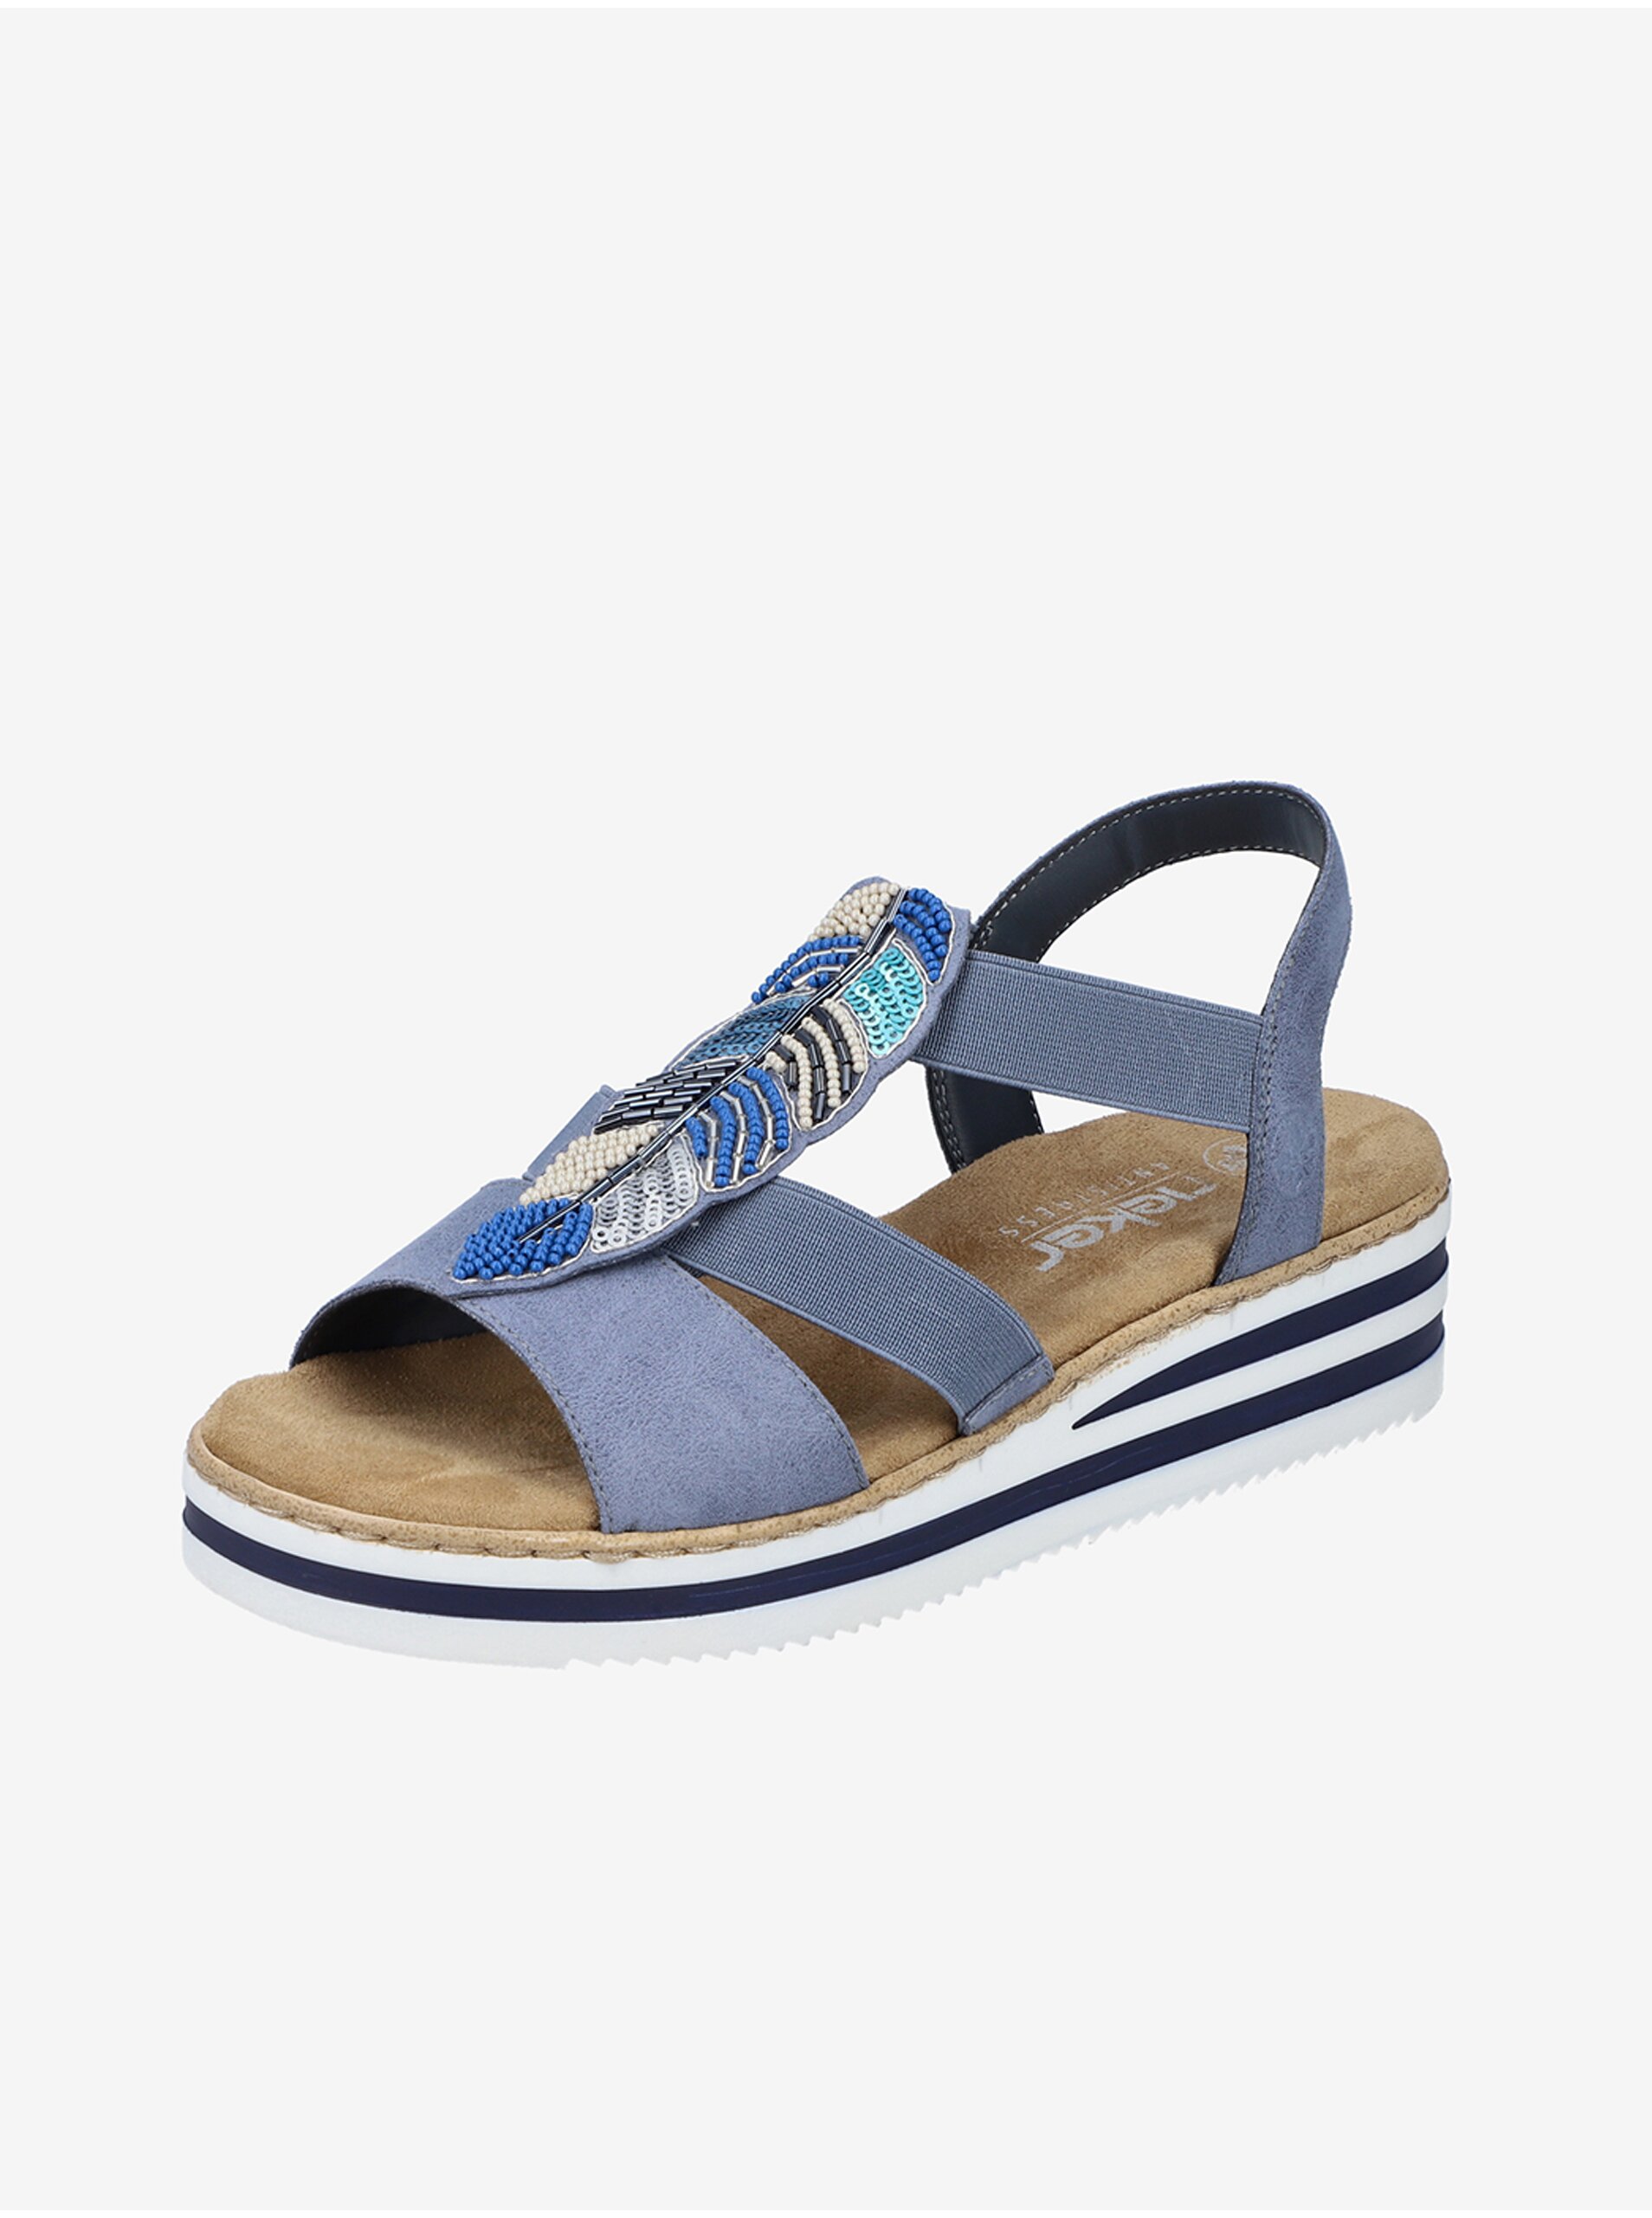 E-shop Modré dámské sandálky Rieker